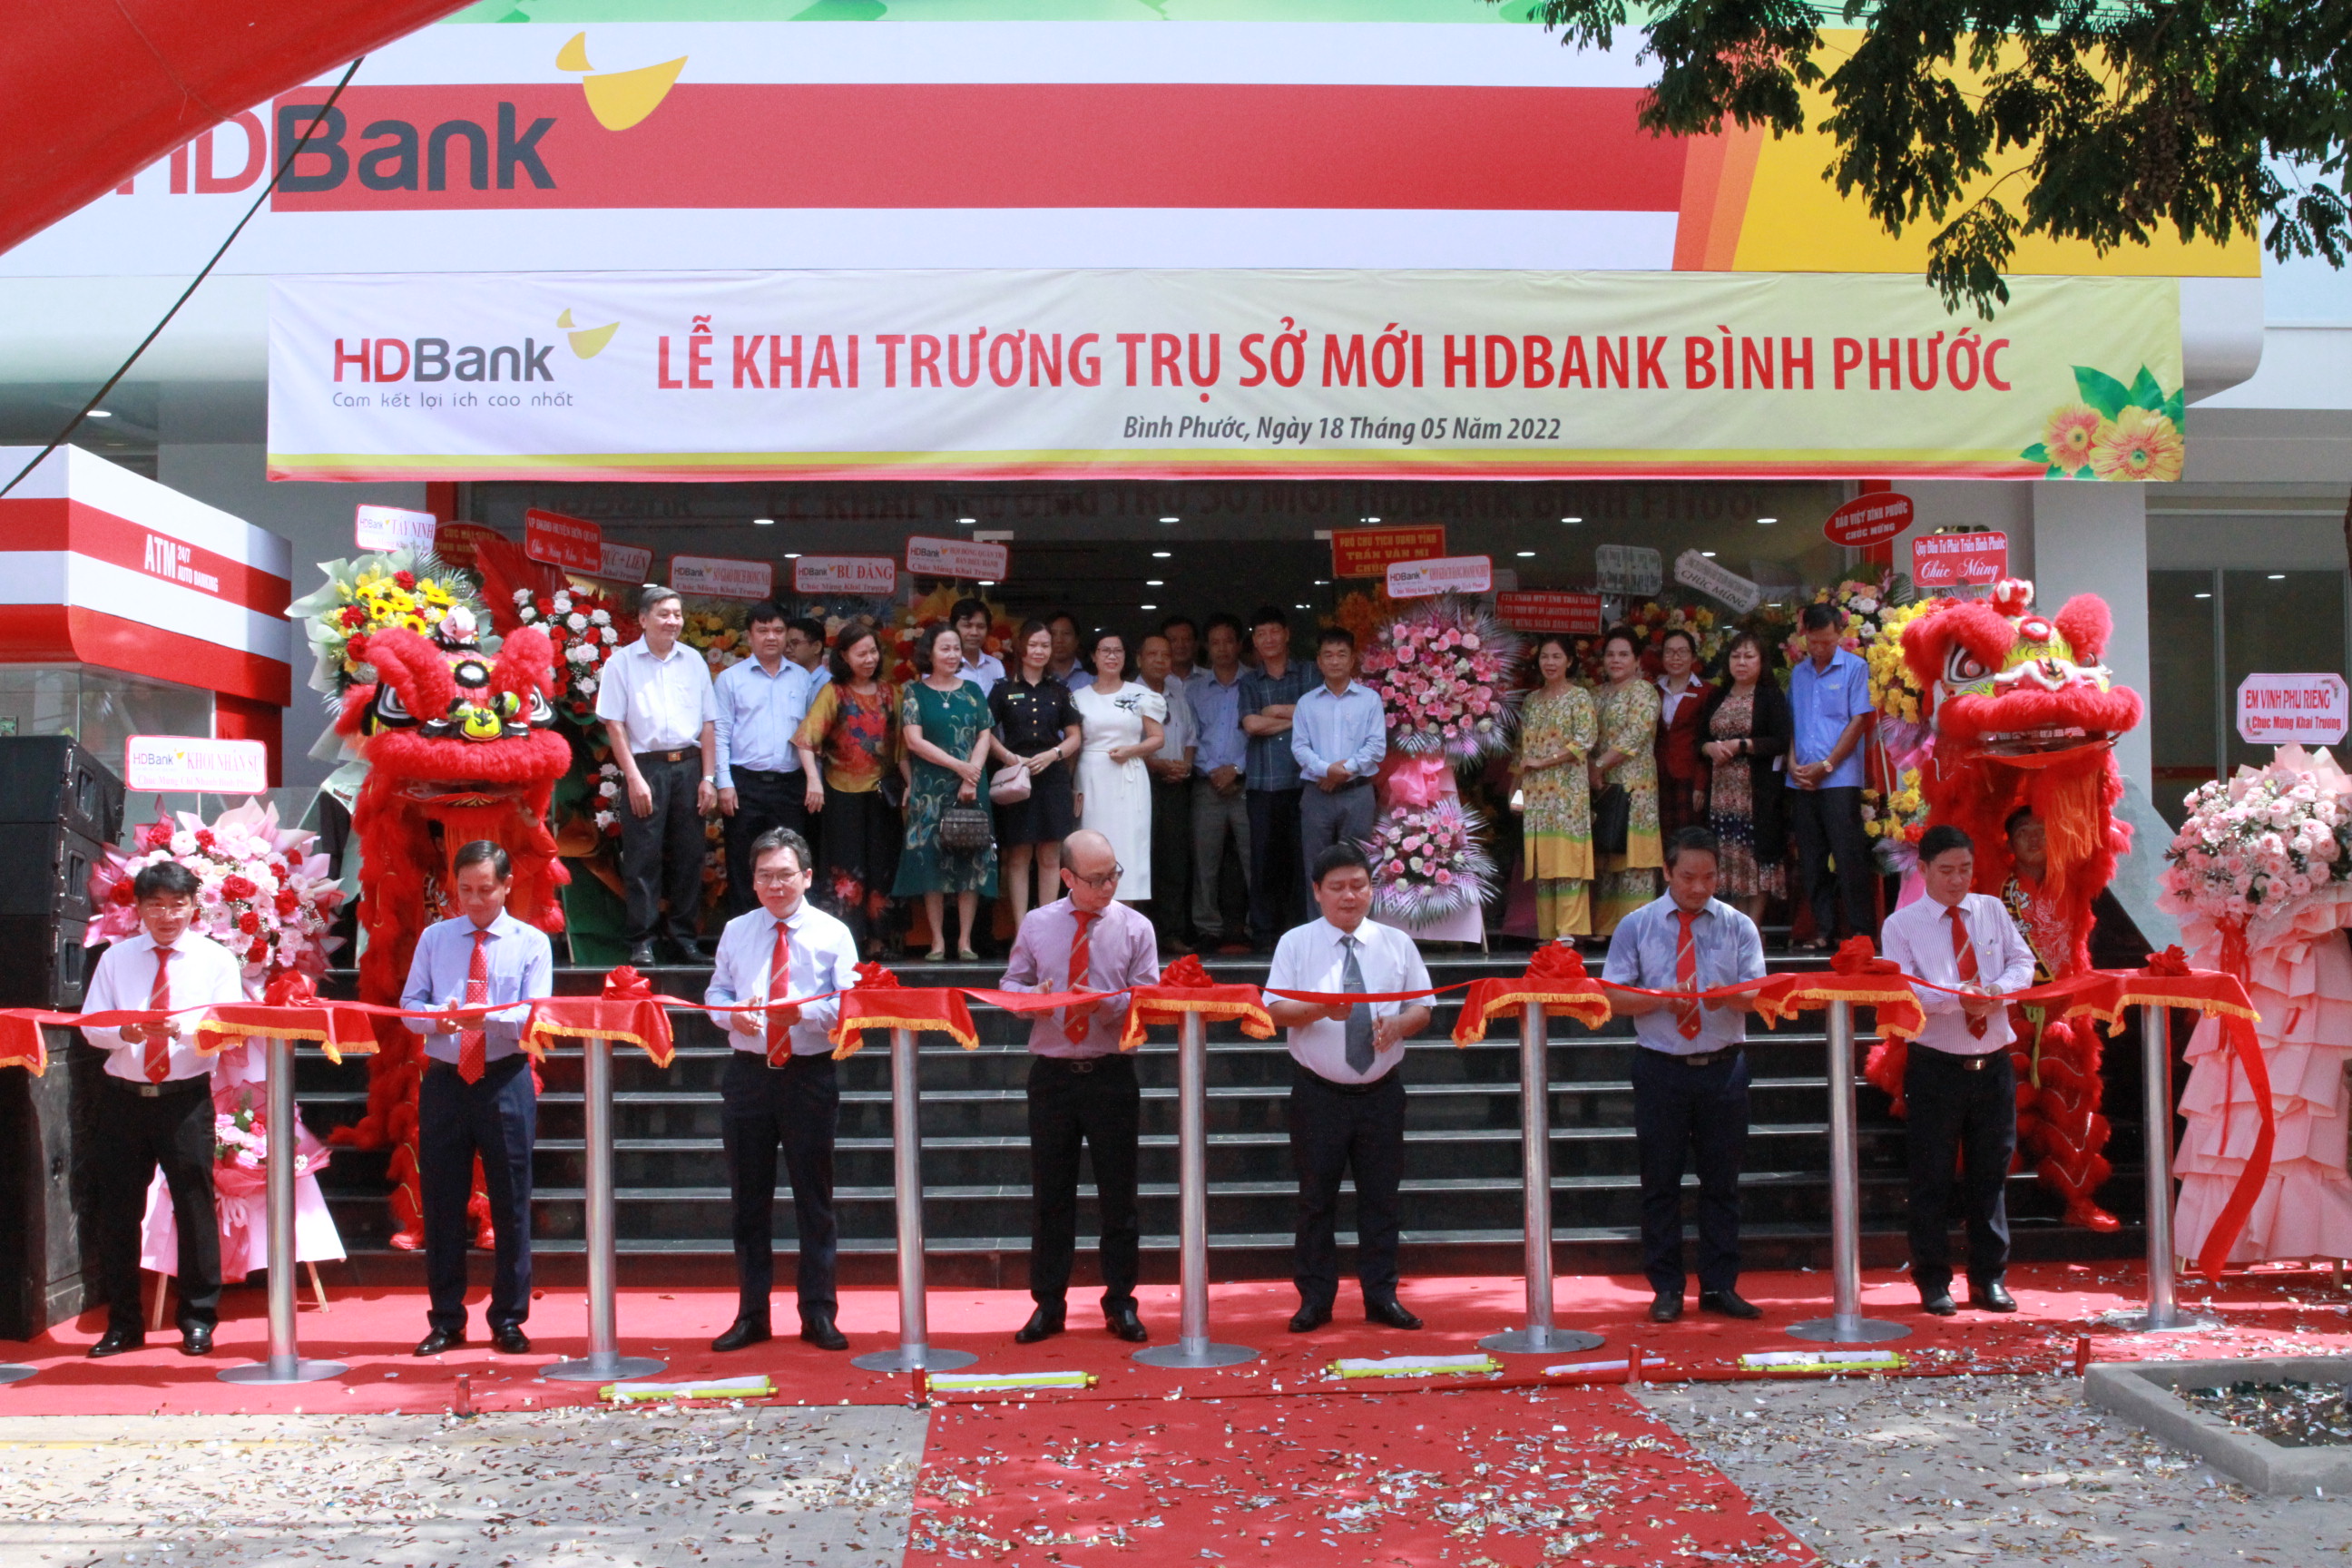 HDBank, Bình Phước: HDBank được xem là một ngân hàng đáng tin cậy tại Việt Nam, bảo vệ các khoản tiền của khách hàng với sự an toàn và tin cậy. Tại Bình Phước, HDBank đã phát triển mạnh mẽ và đóng góp tích cực cho sự phát triển kinh tế của địa phương. Hình ảnh HDBank sẽ giúp khách hàng tin tưởng và hiểu rõ hơn về ngân hàng đáng tin cậy này.